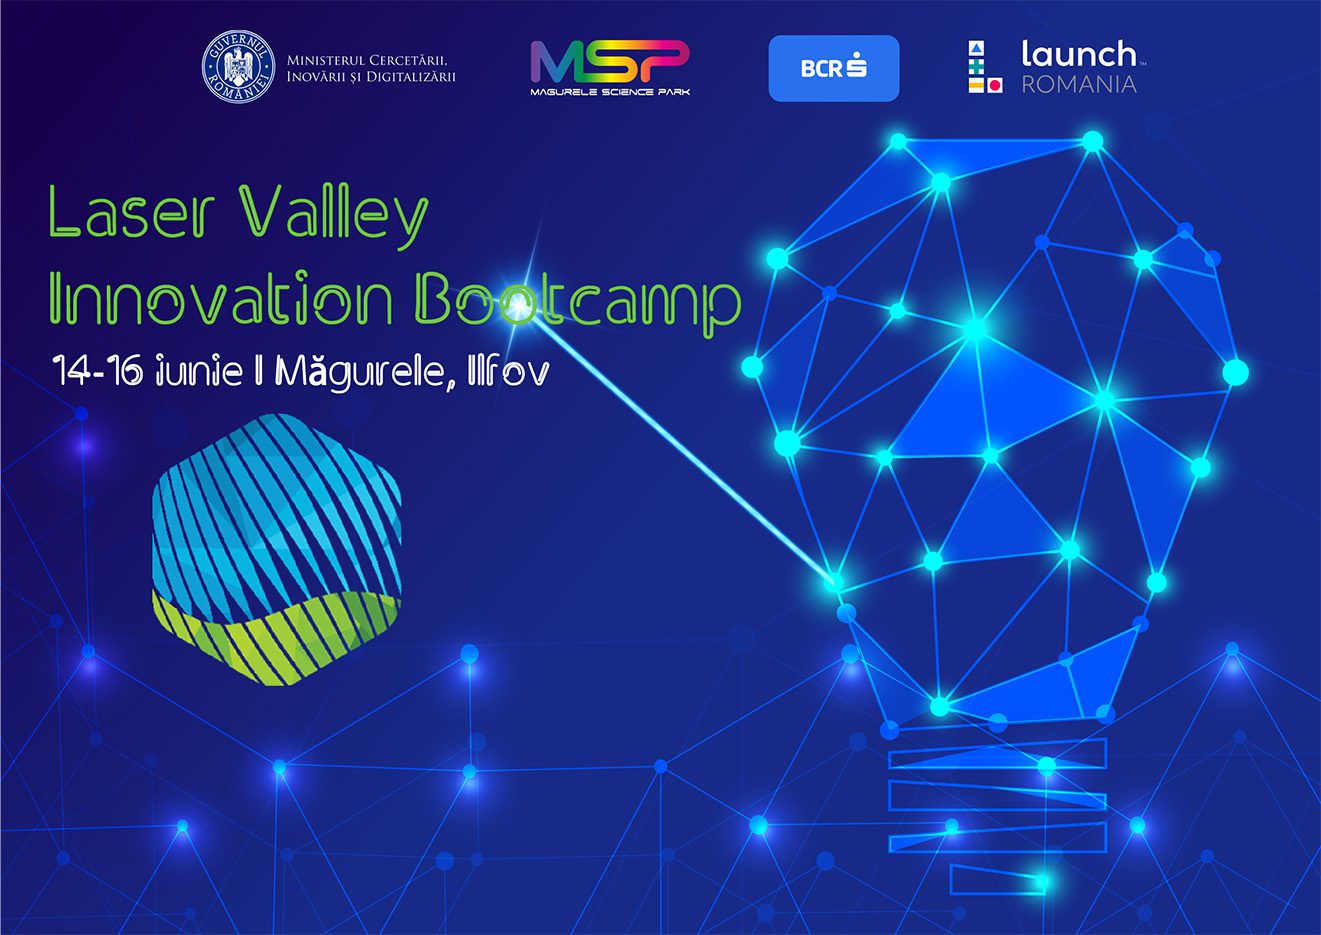 A 2-a ediție a Laser Valley Innovation Bootcamp va avea loc în Măgurele între 14-16 iunie